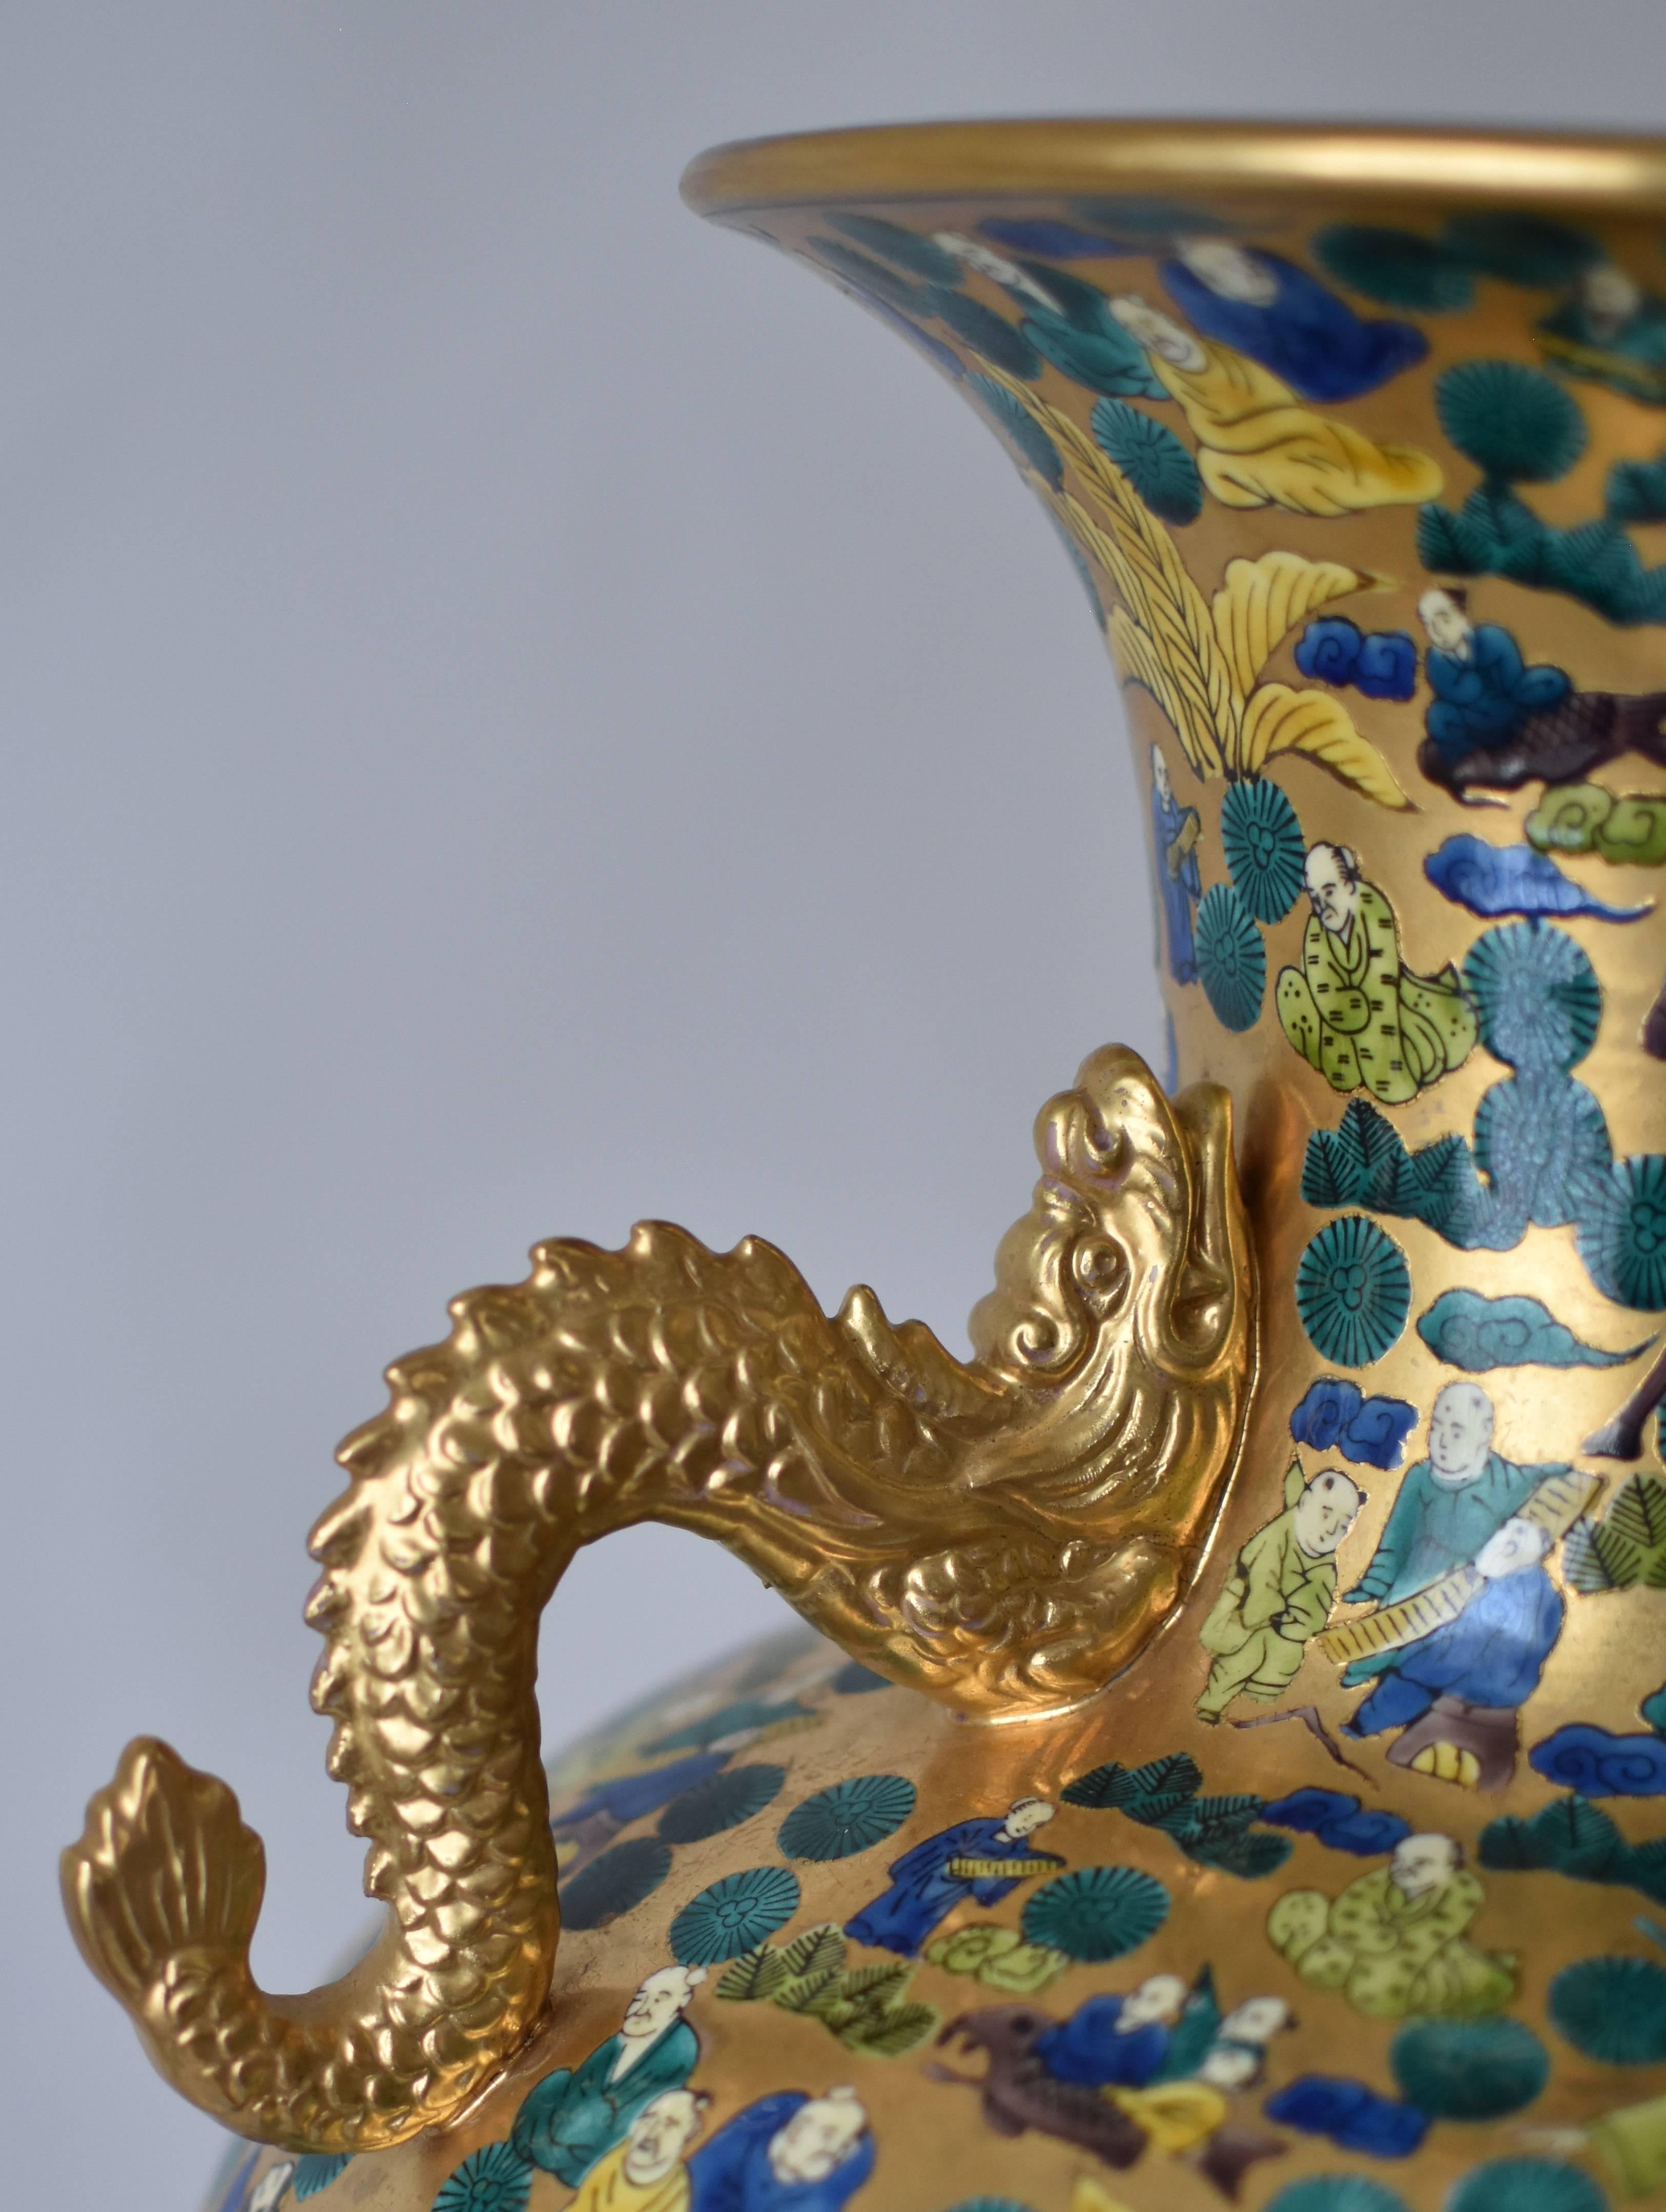 Japonais Vase contemporain japonais en porcelaine verte, bleue et dorée, réalisé par un maître artiste, 2 en vente